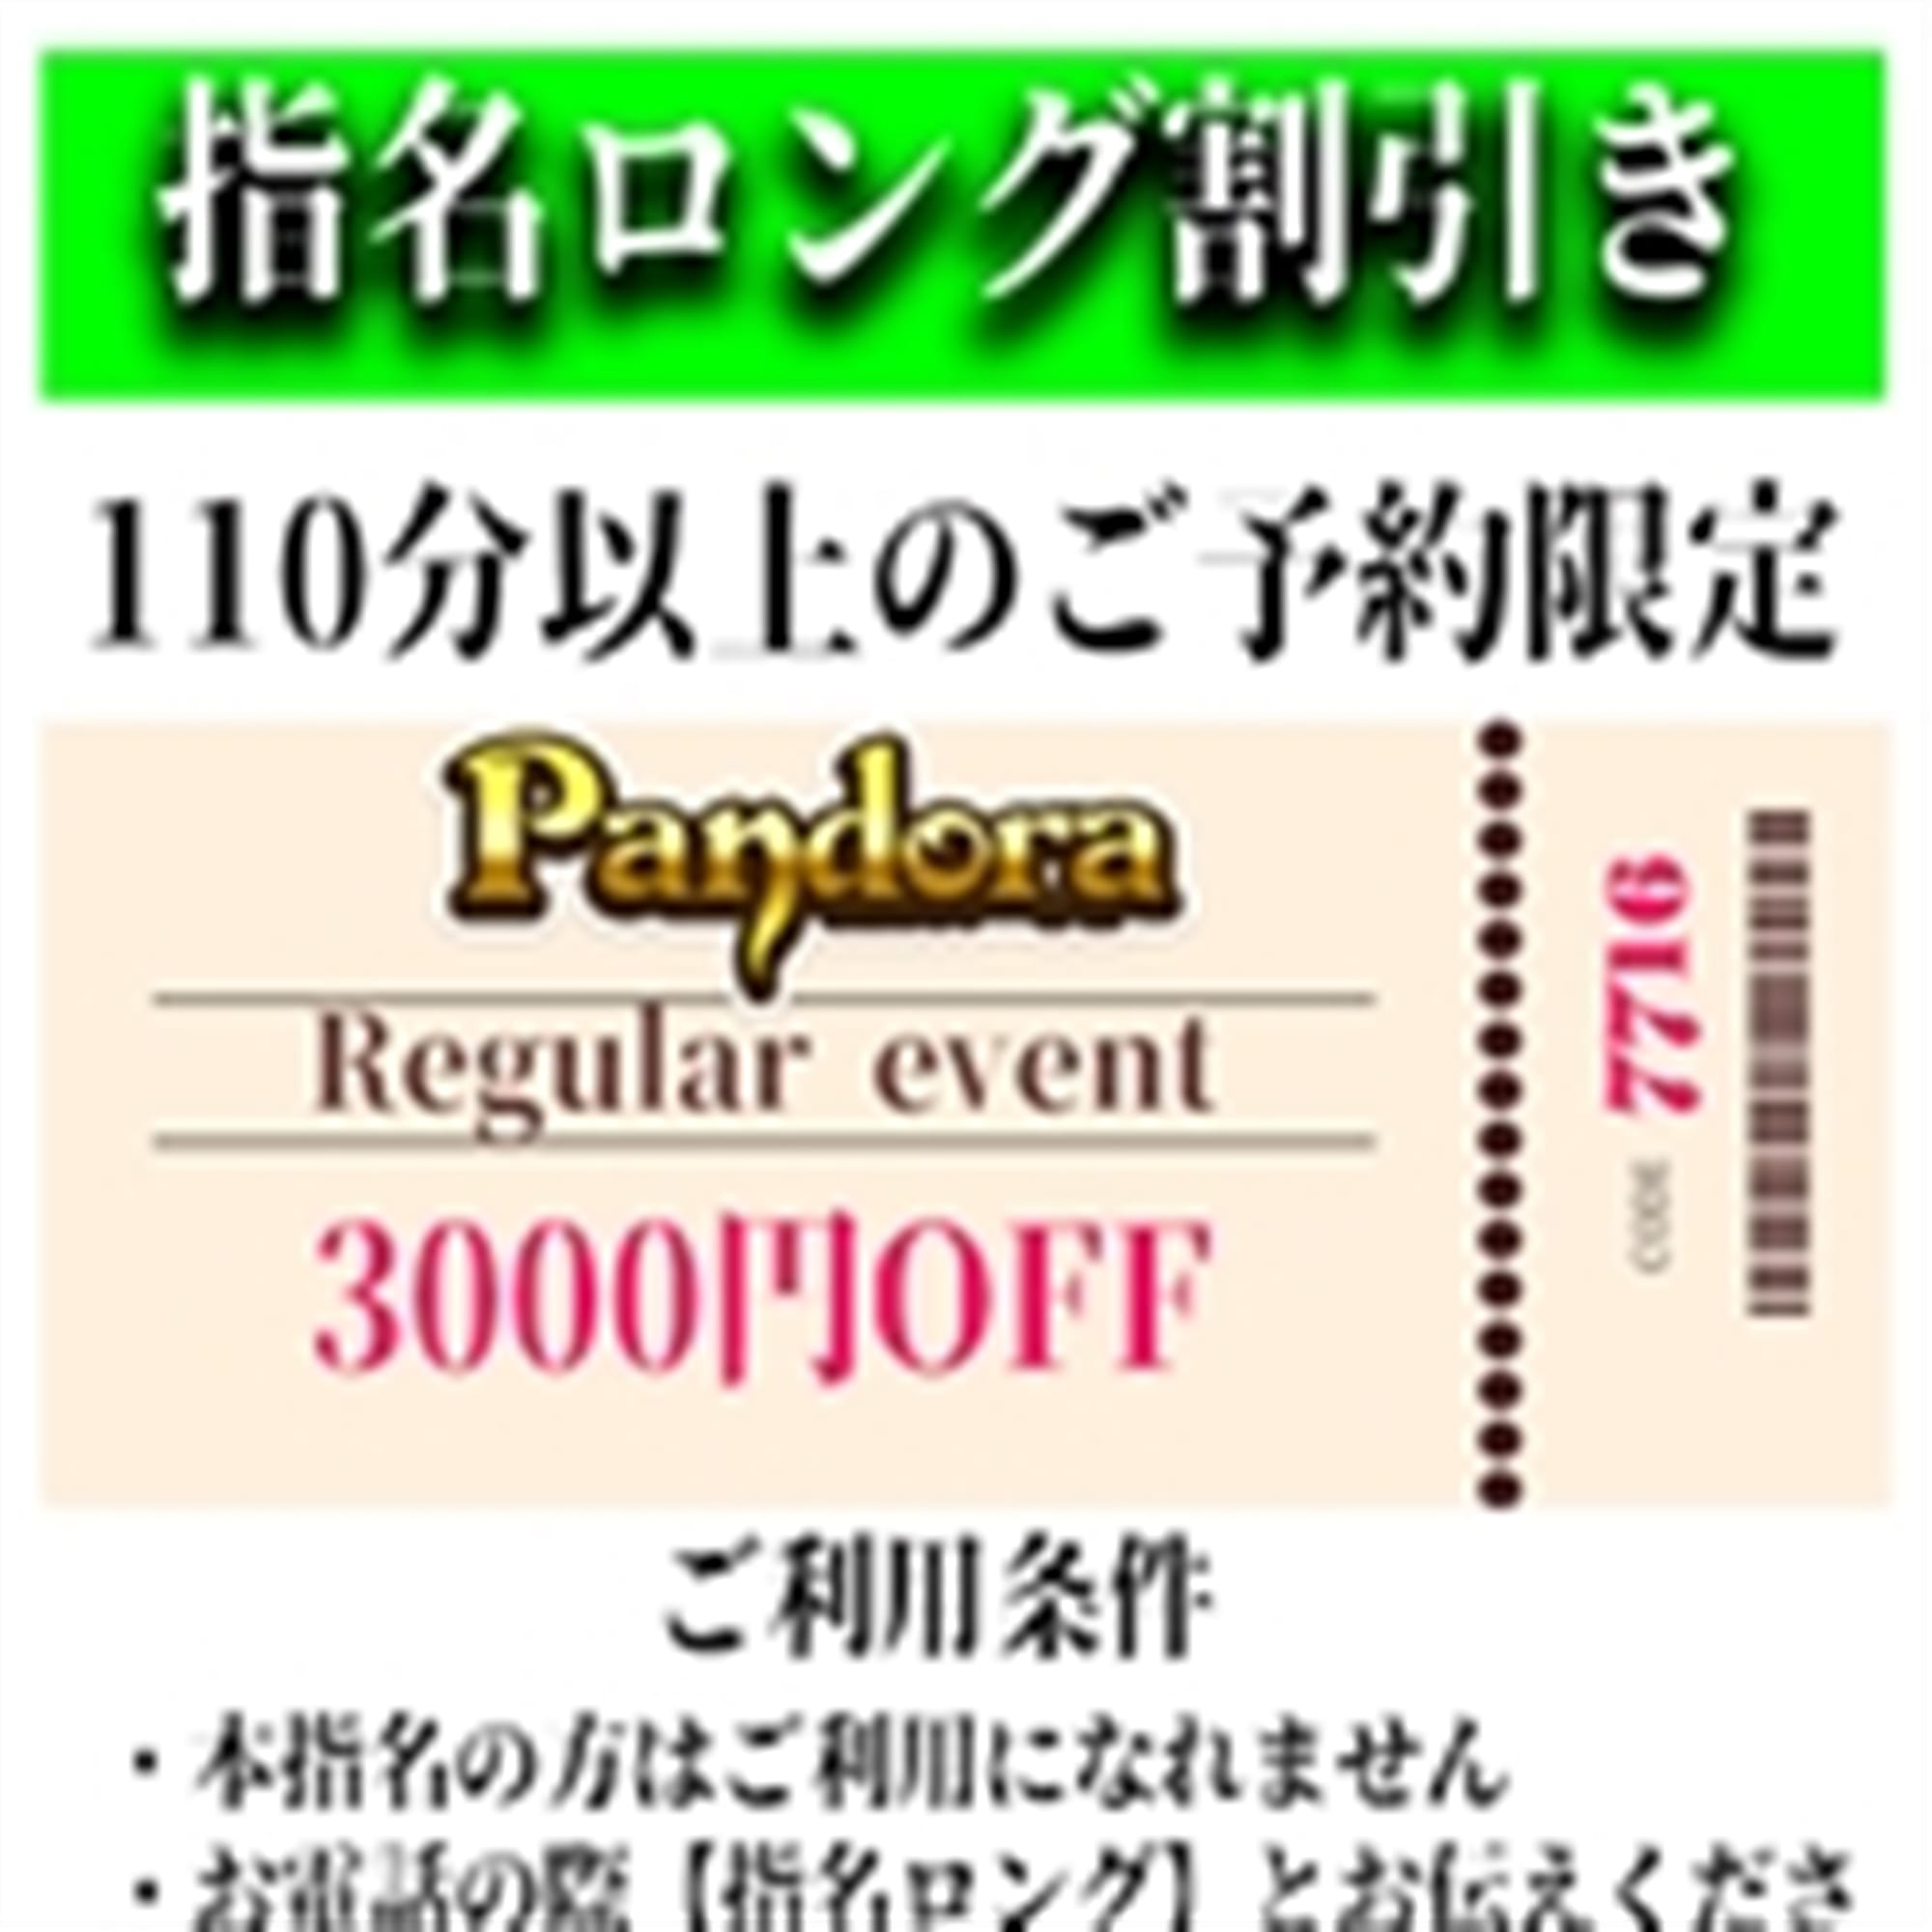 「ご指名のお客様も遊べるロングコース割引」04/24(水) 17:52 | Pandora(パンドラ)新潟のお得なニュース